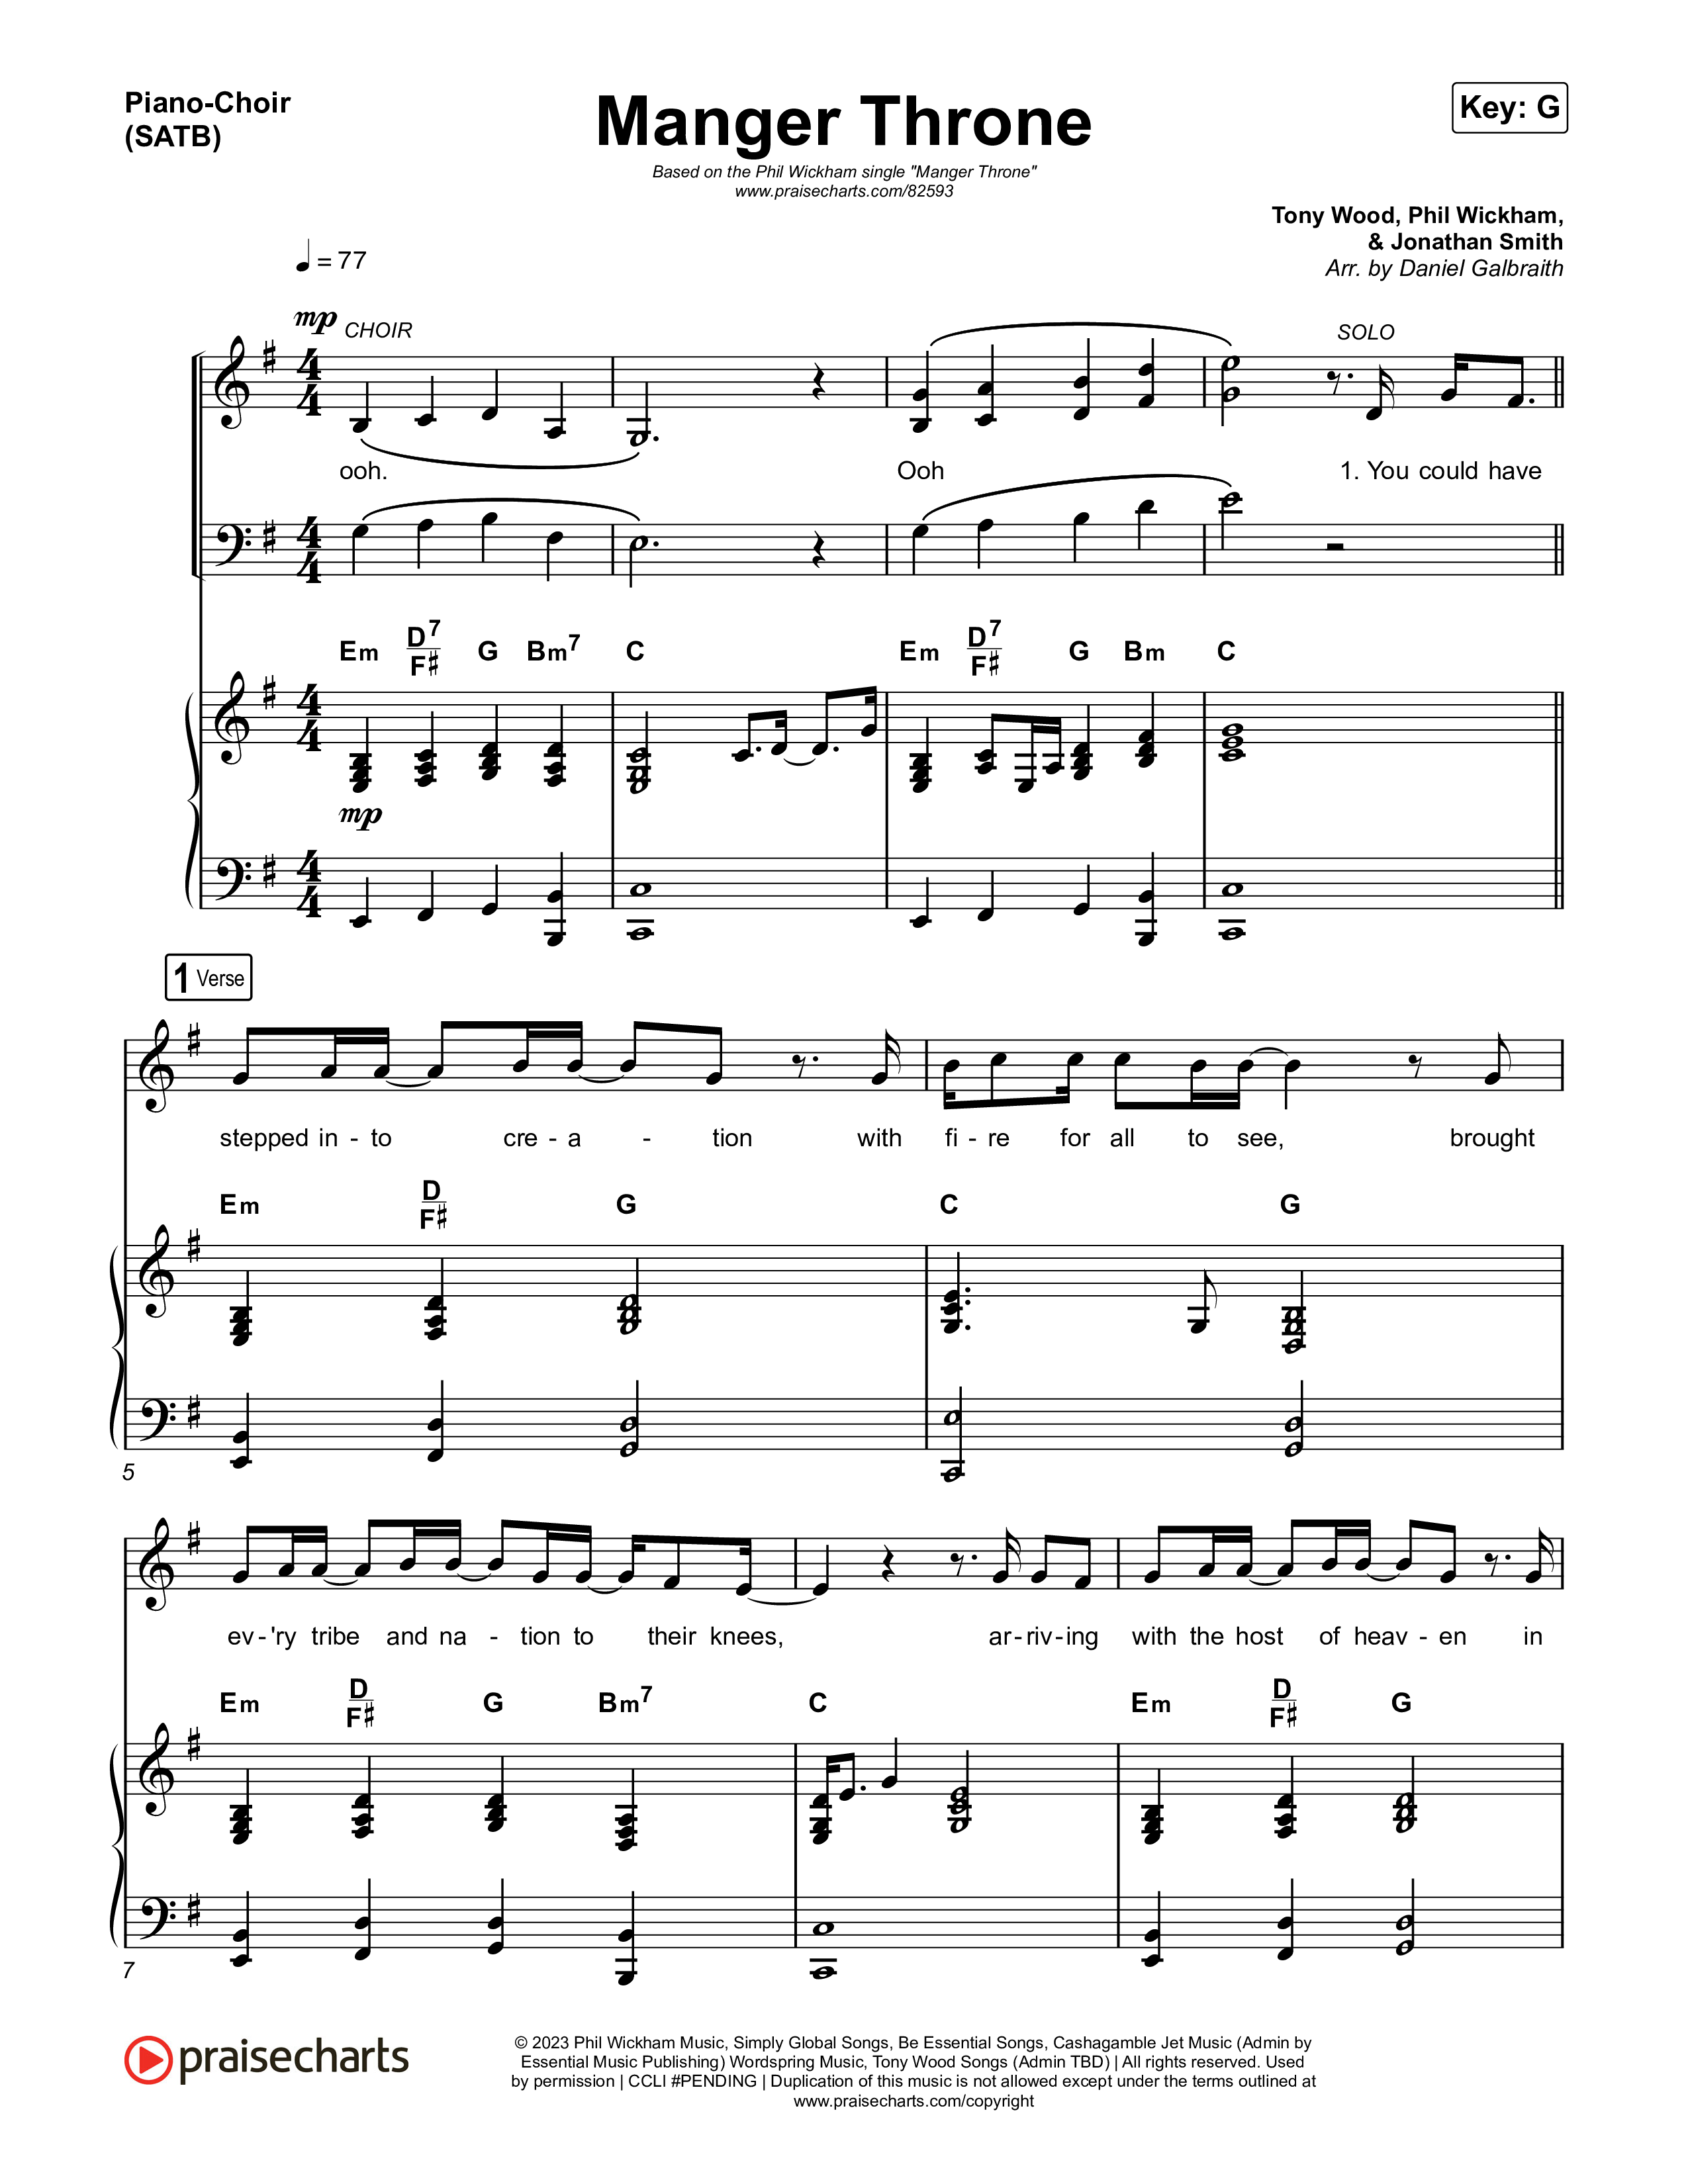 Manger Throne Piano/Vocal (SATB) (Phil Wickham)